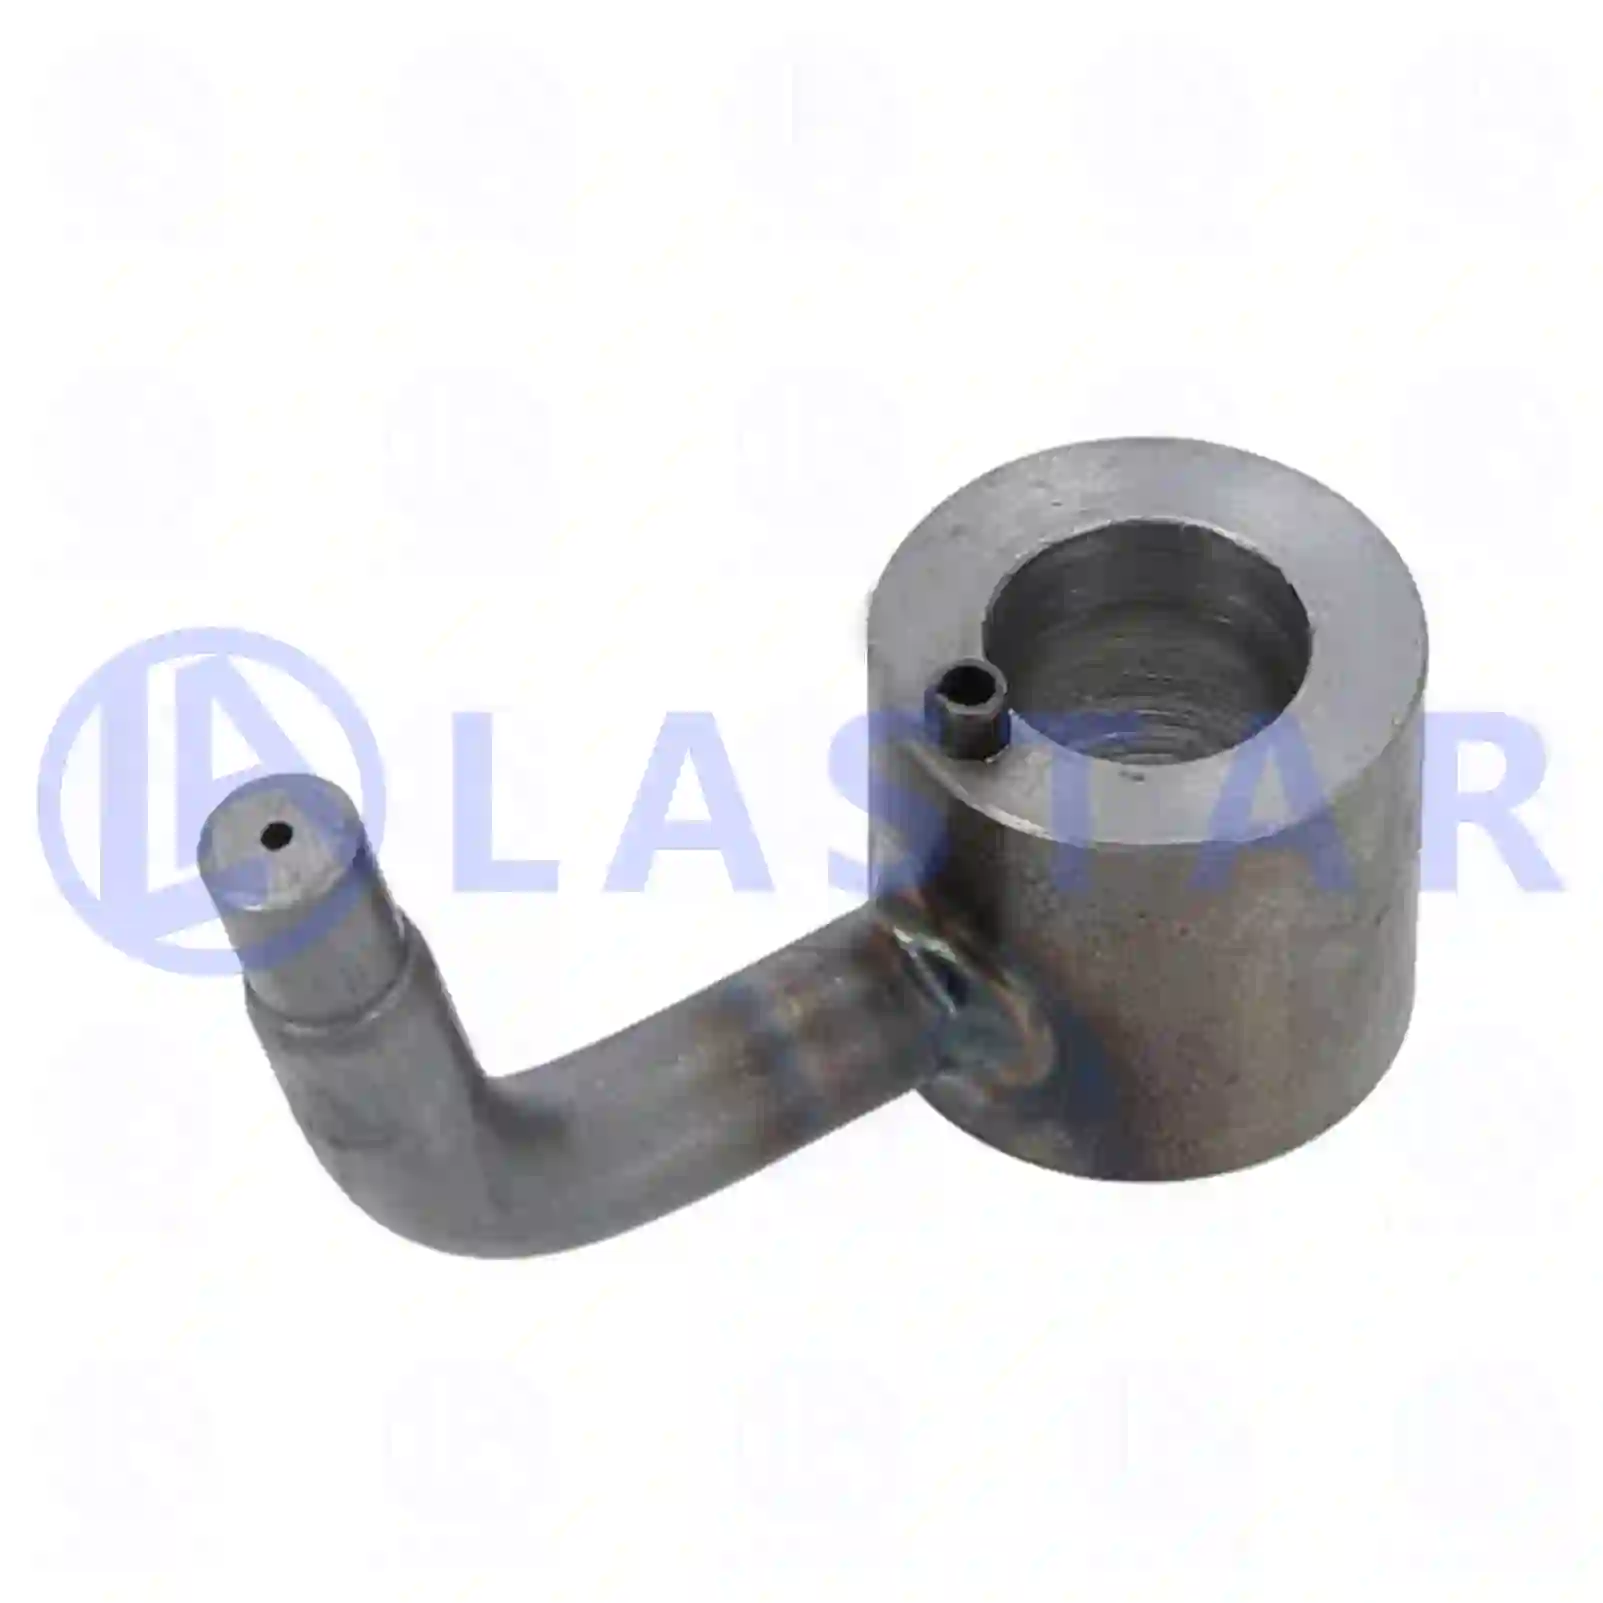  Oil nozzle || Lastar Spare Part | Truck Spare Parts, Auotomotive Spare Parts